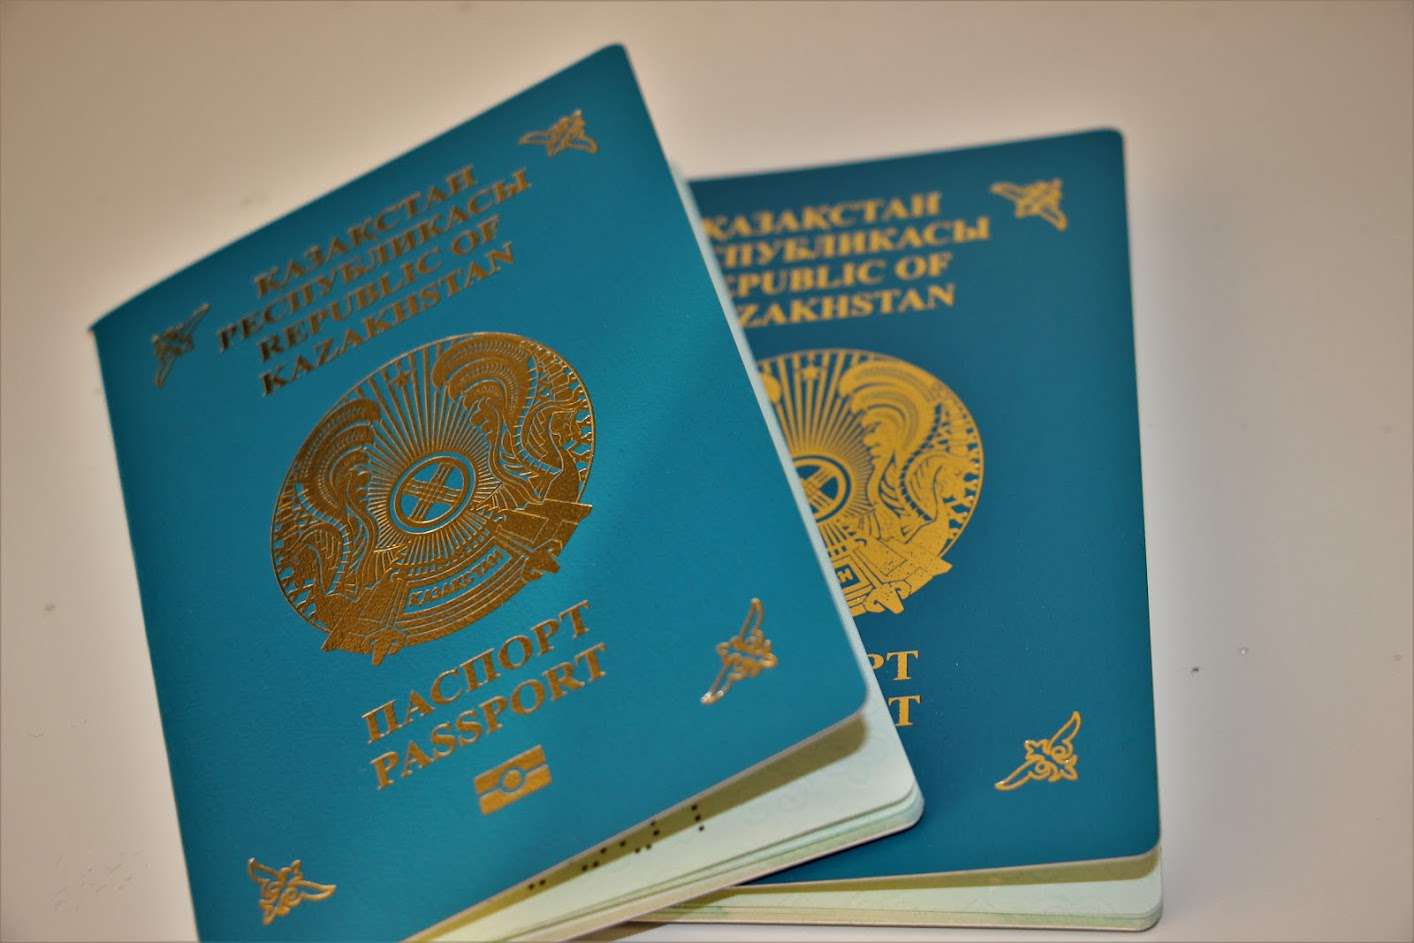 загранпаспорт в казахстане